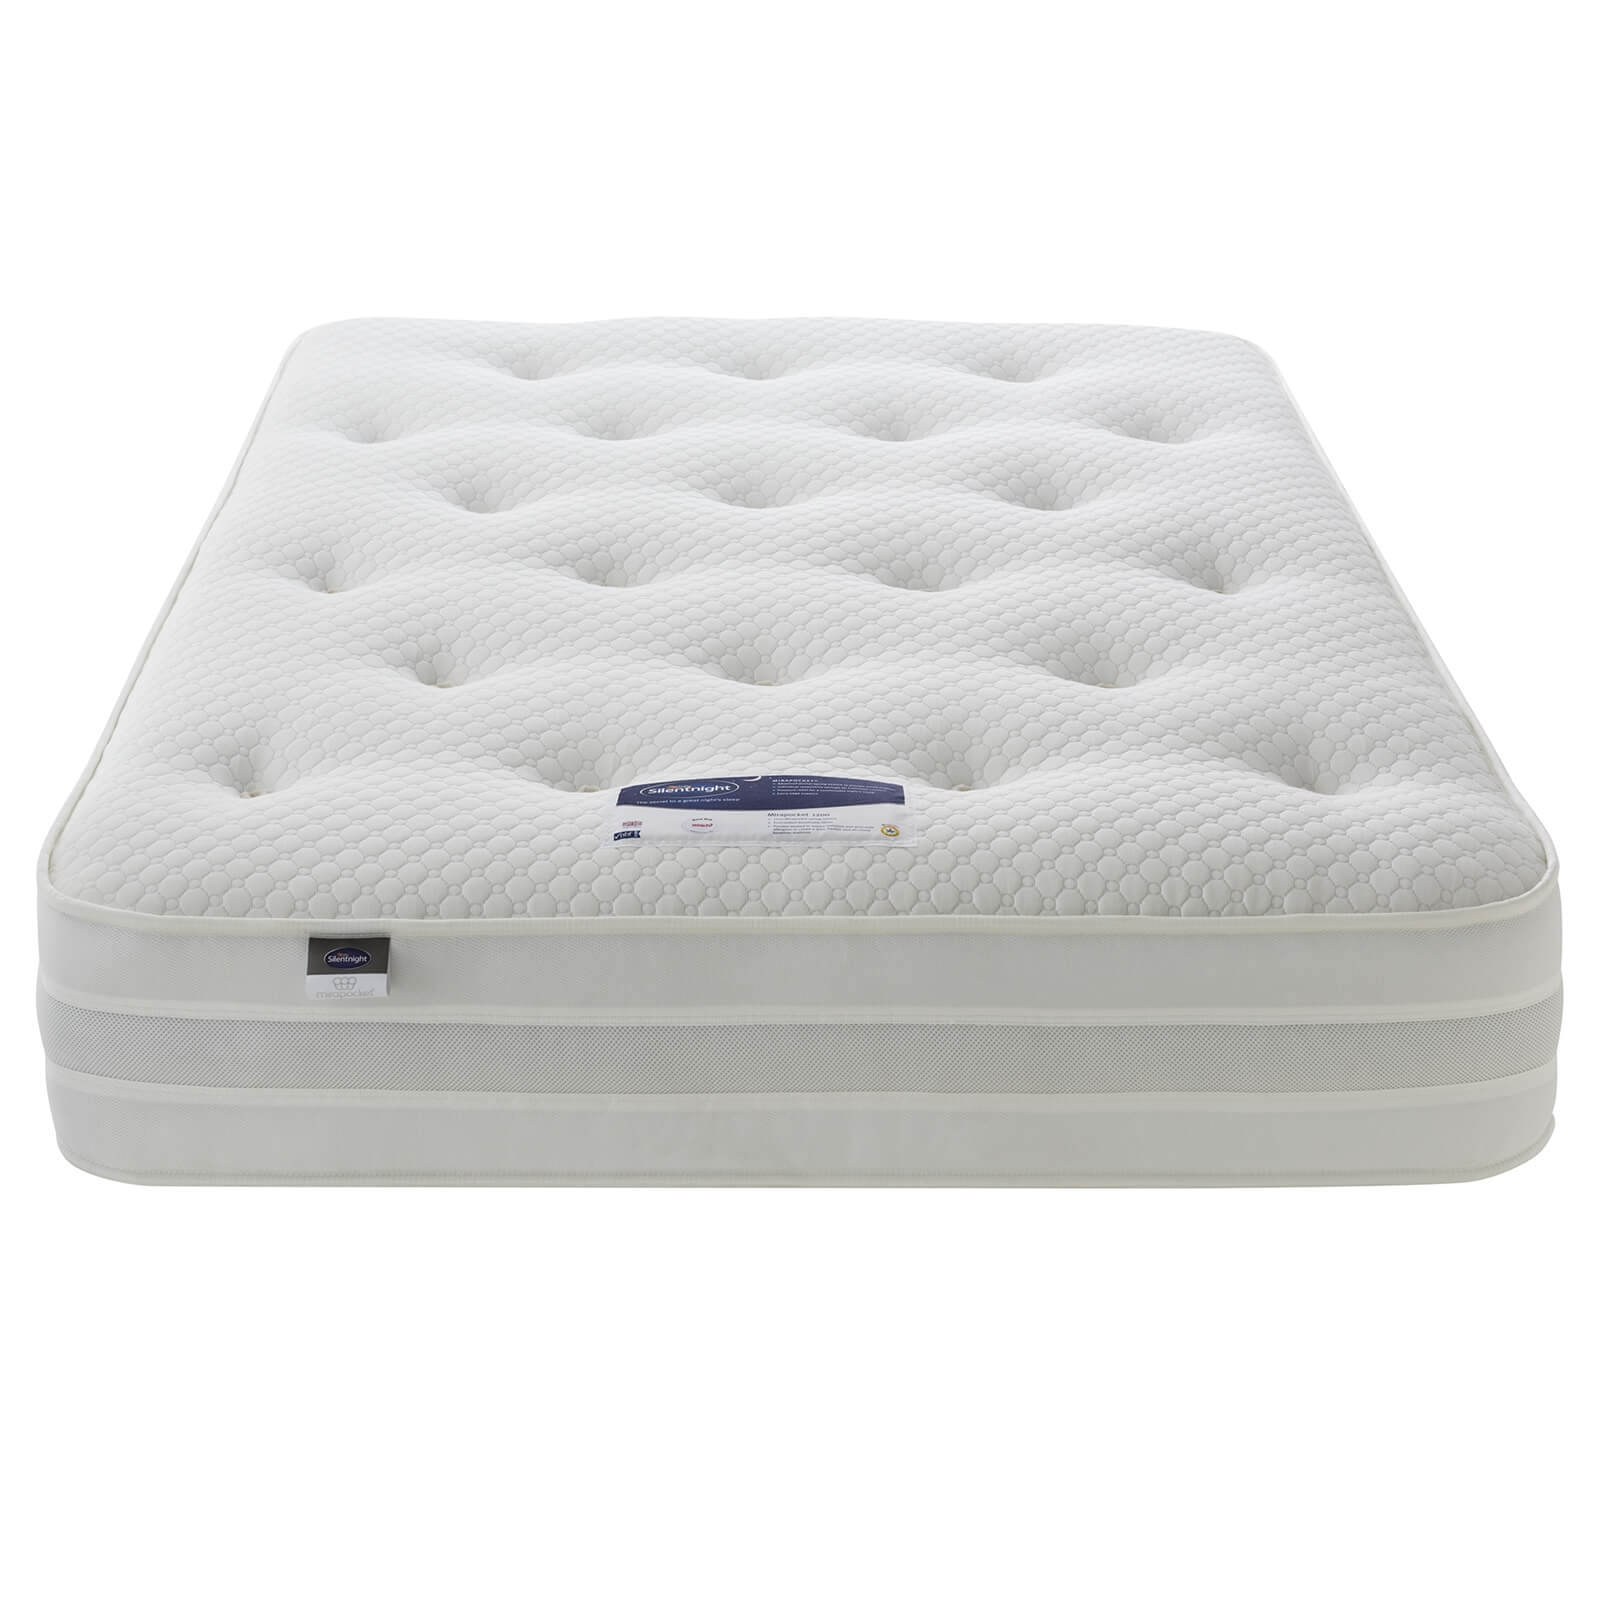 Silentnight Eco Comfort 1200 Pocket Divan Bed 4 Drawer - Slate Grey - King